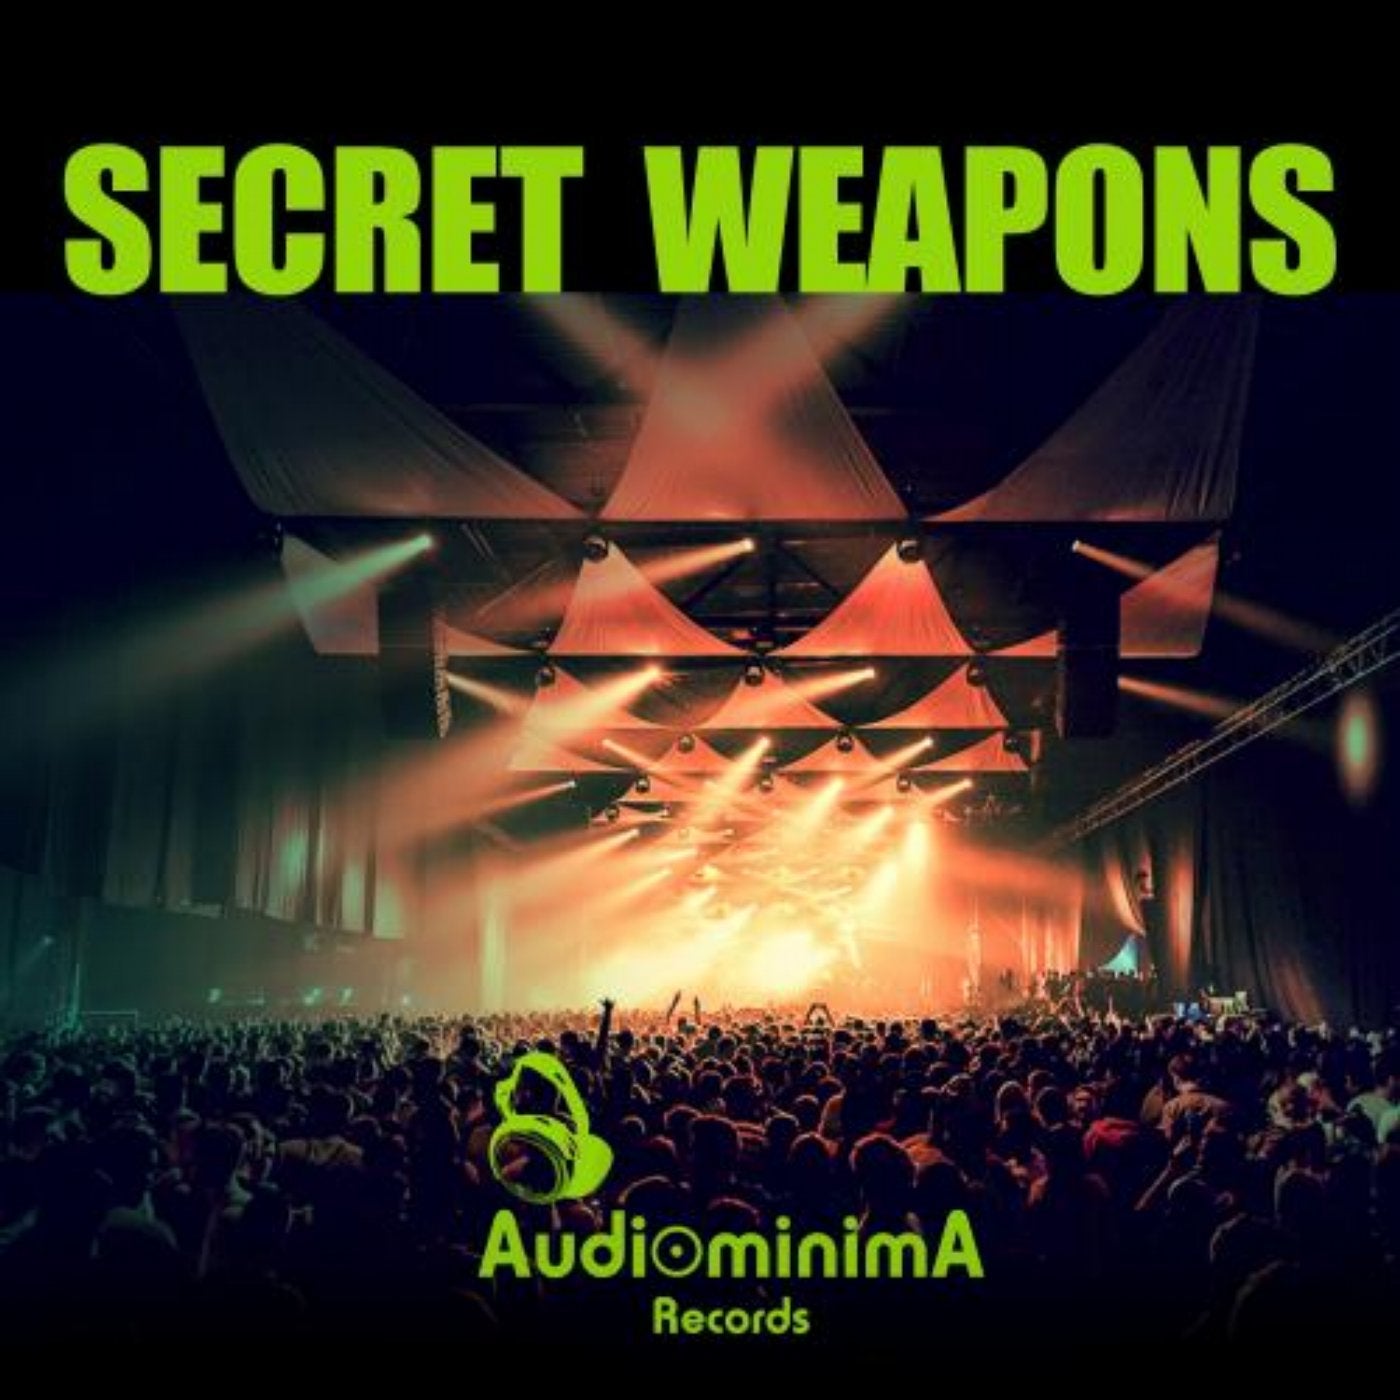 Secret Weapons 2